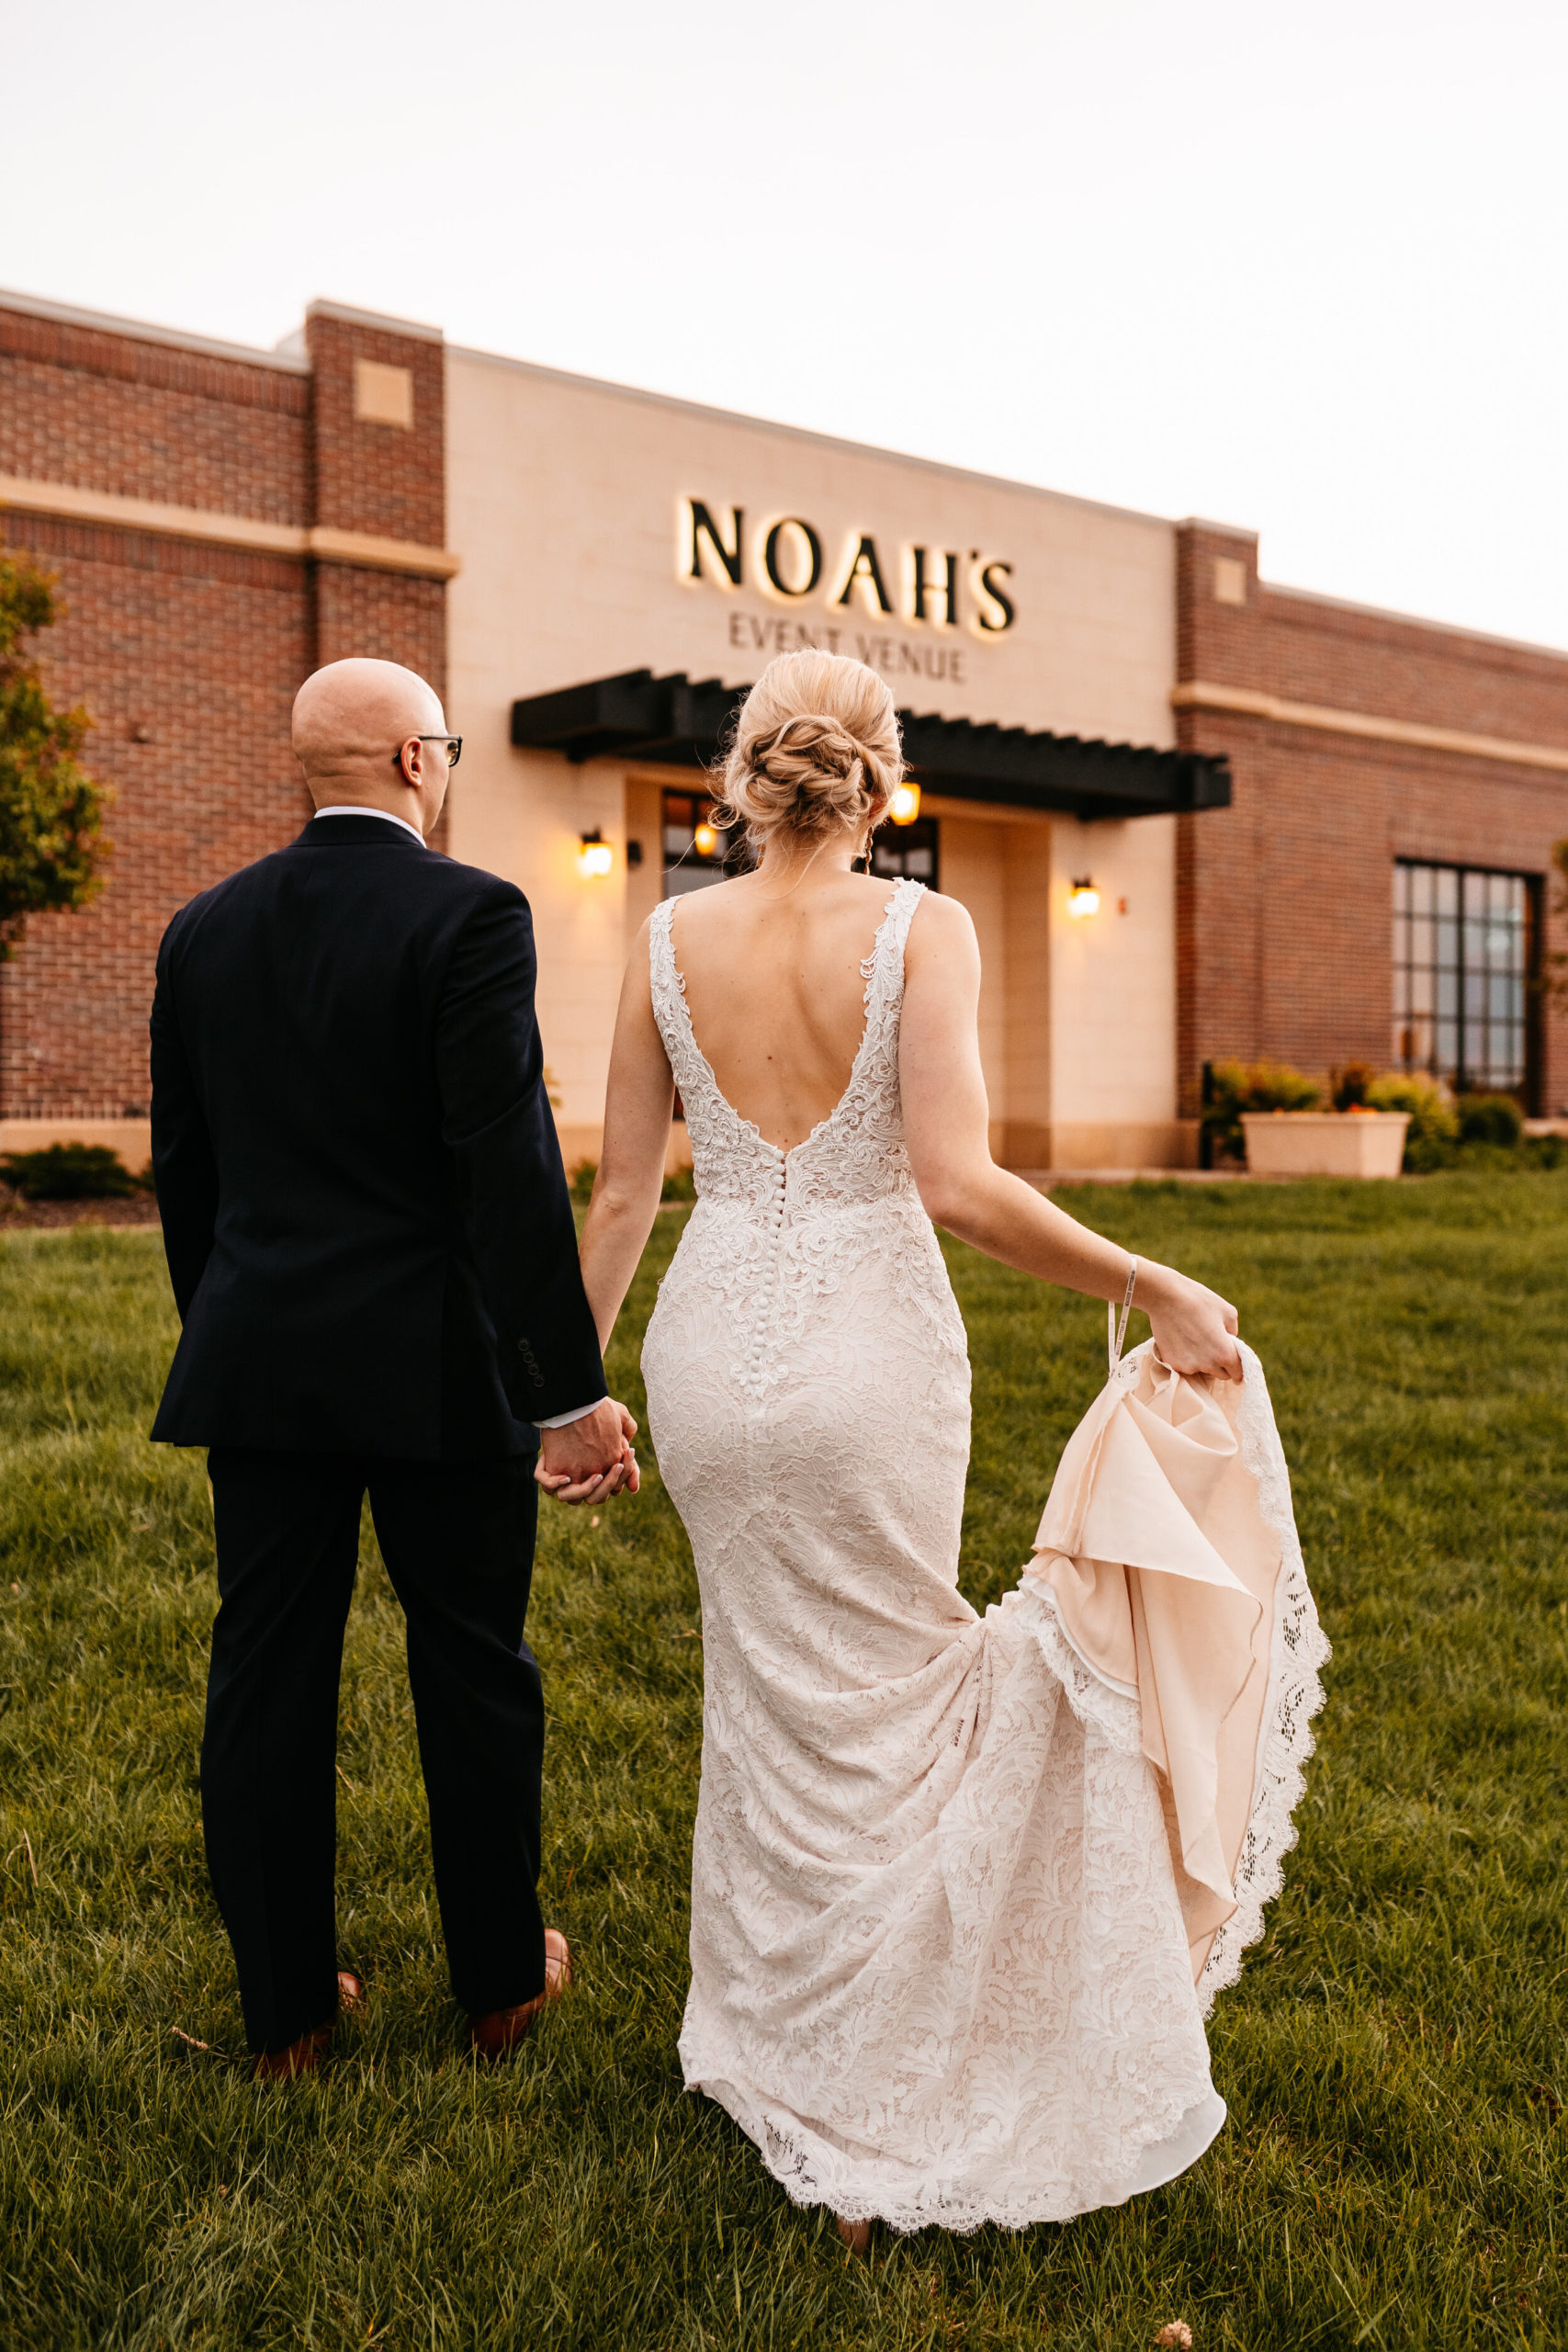 Amber + Nick - Modern Spring Wedding at Noah's Wichita, Kansas143.jpg